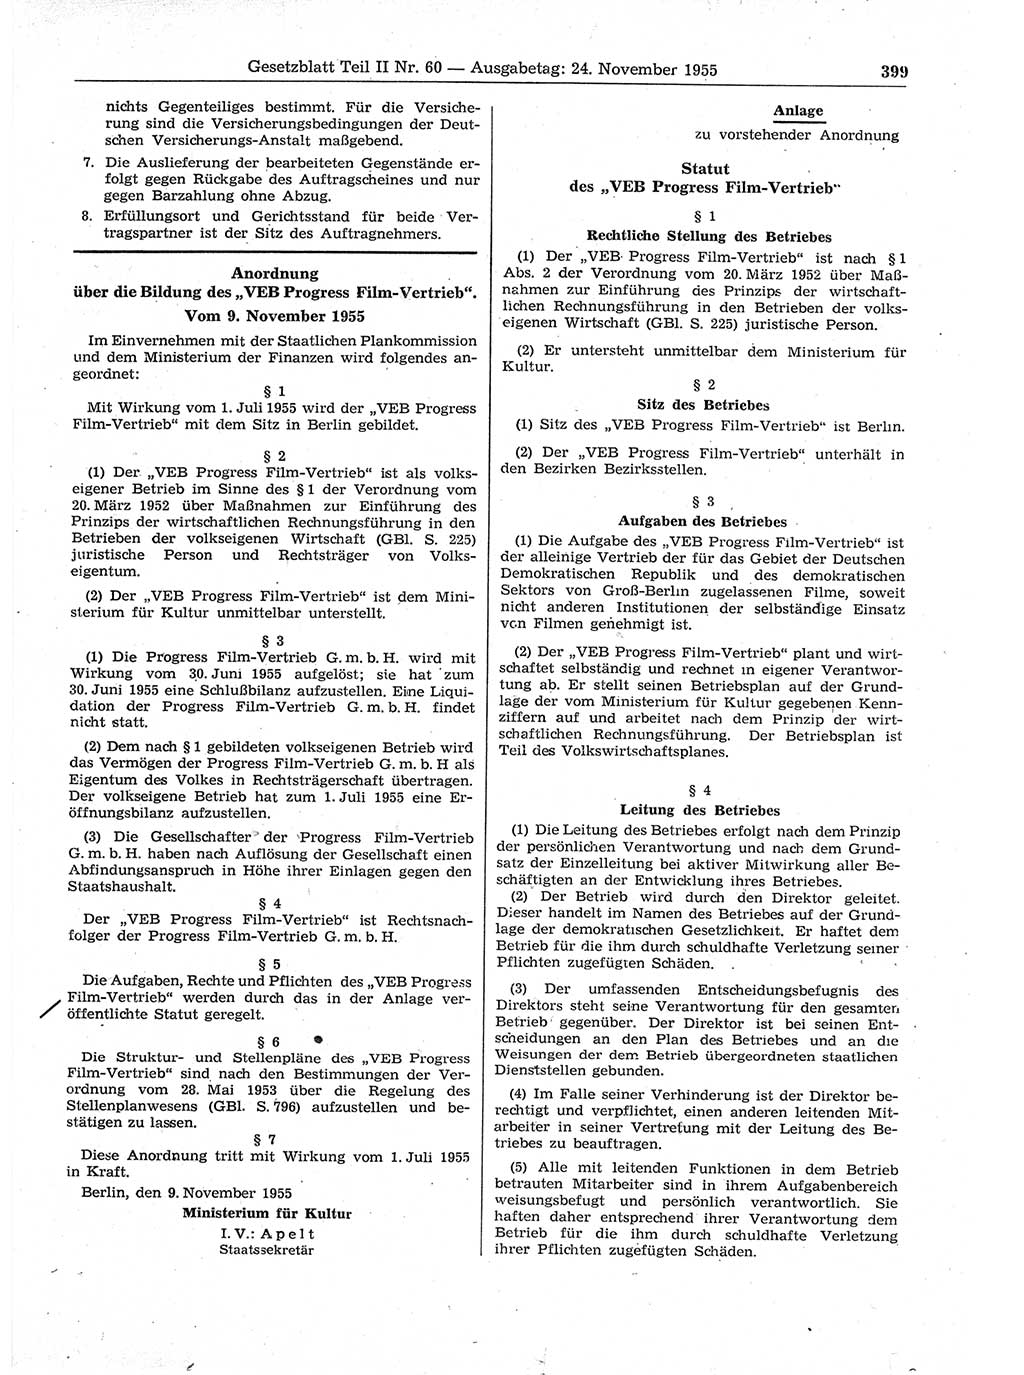 Gesetzblatt (GBl.) der Deutschen Demokratischen Republik (DDR) Teil ⅠⅠ 1955, Seite 399 (GBl. DDR ⅠⅠ 1955, S. 399)